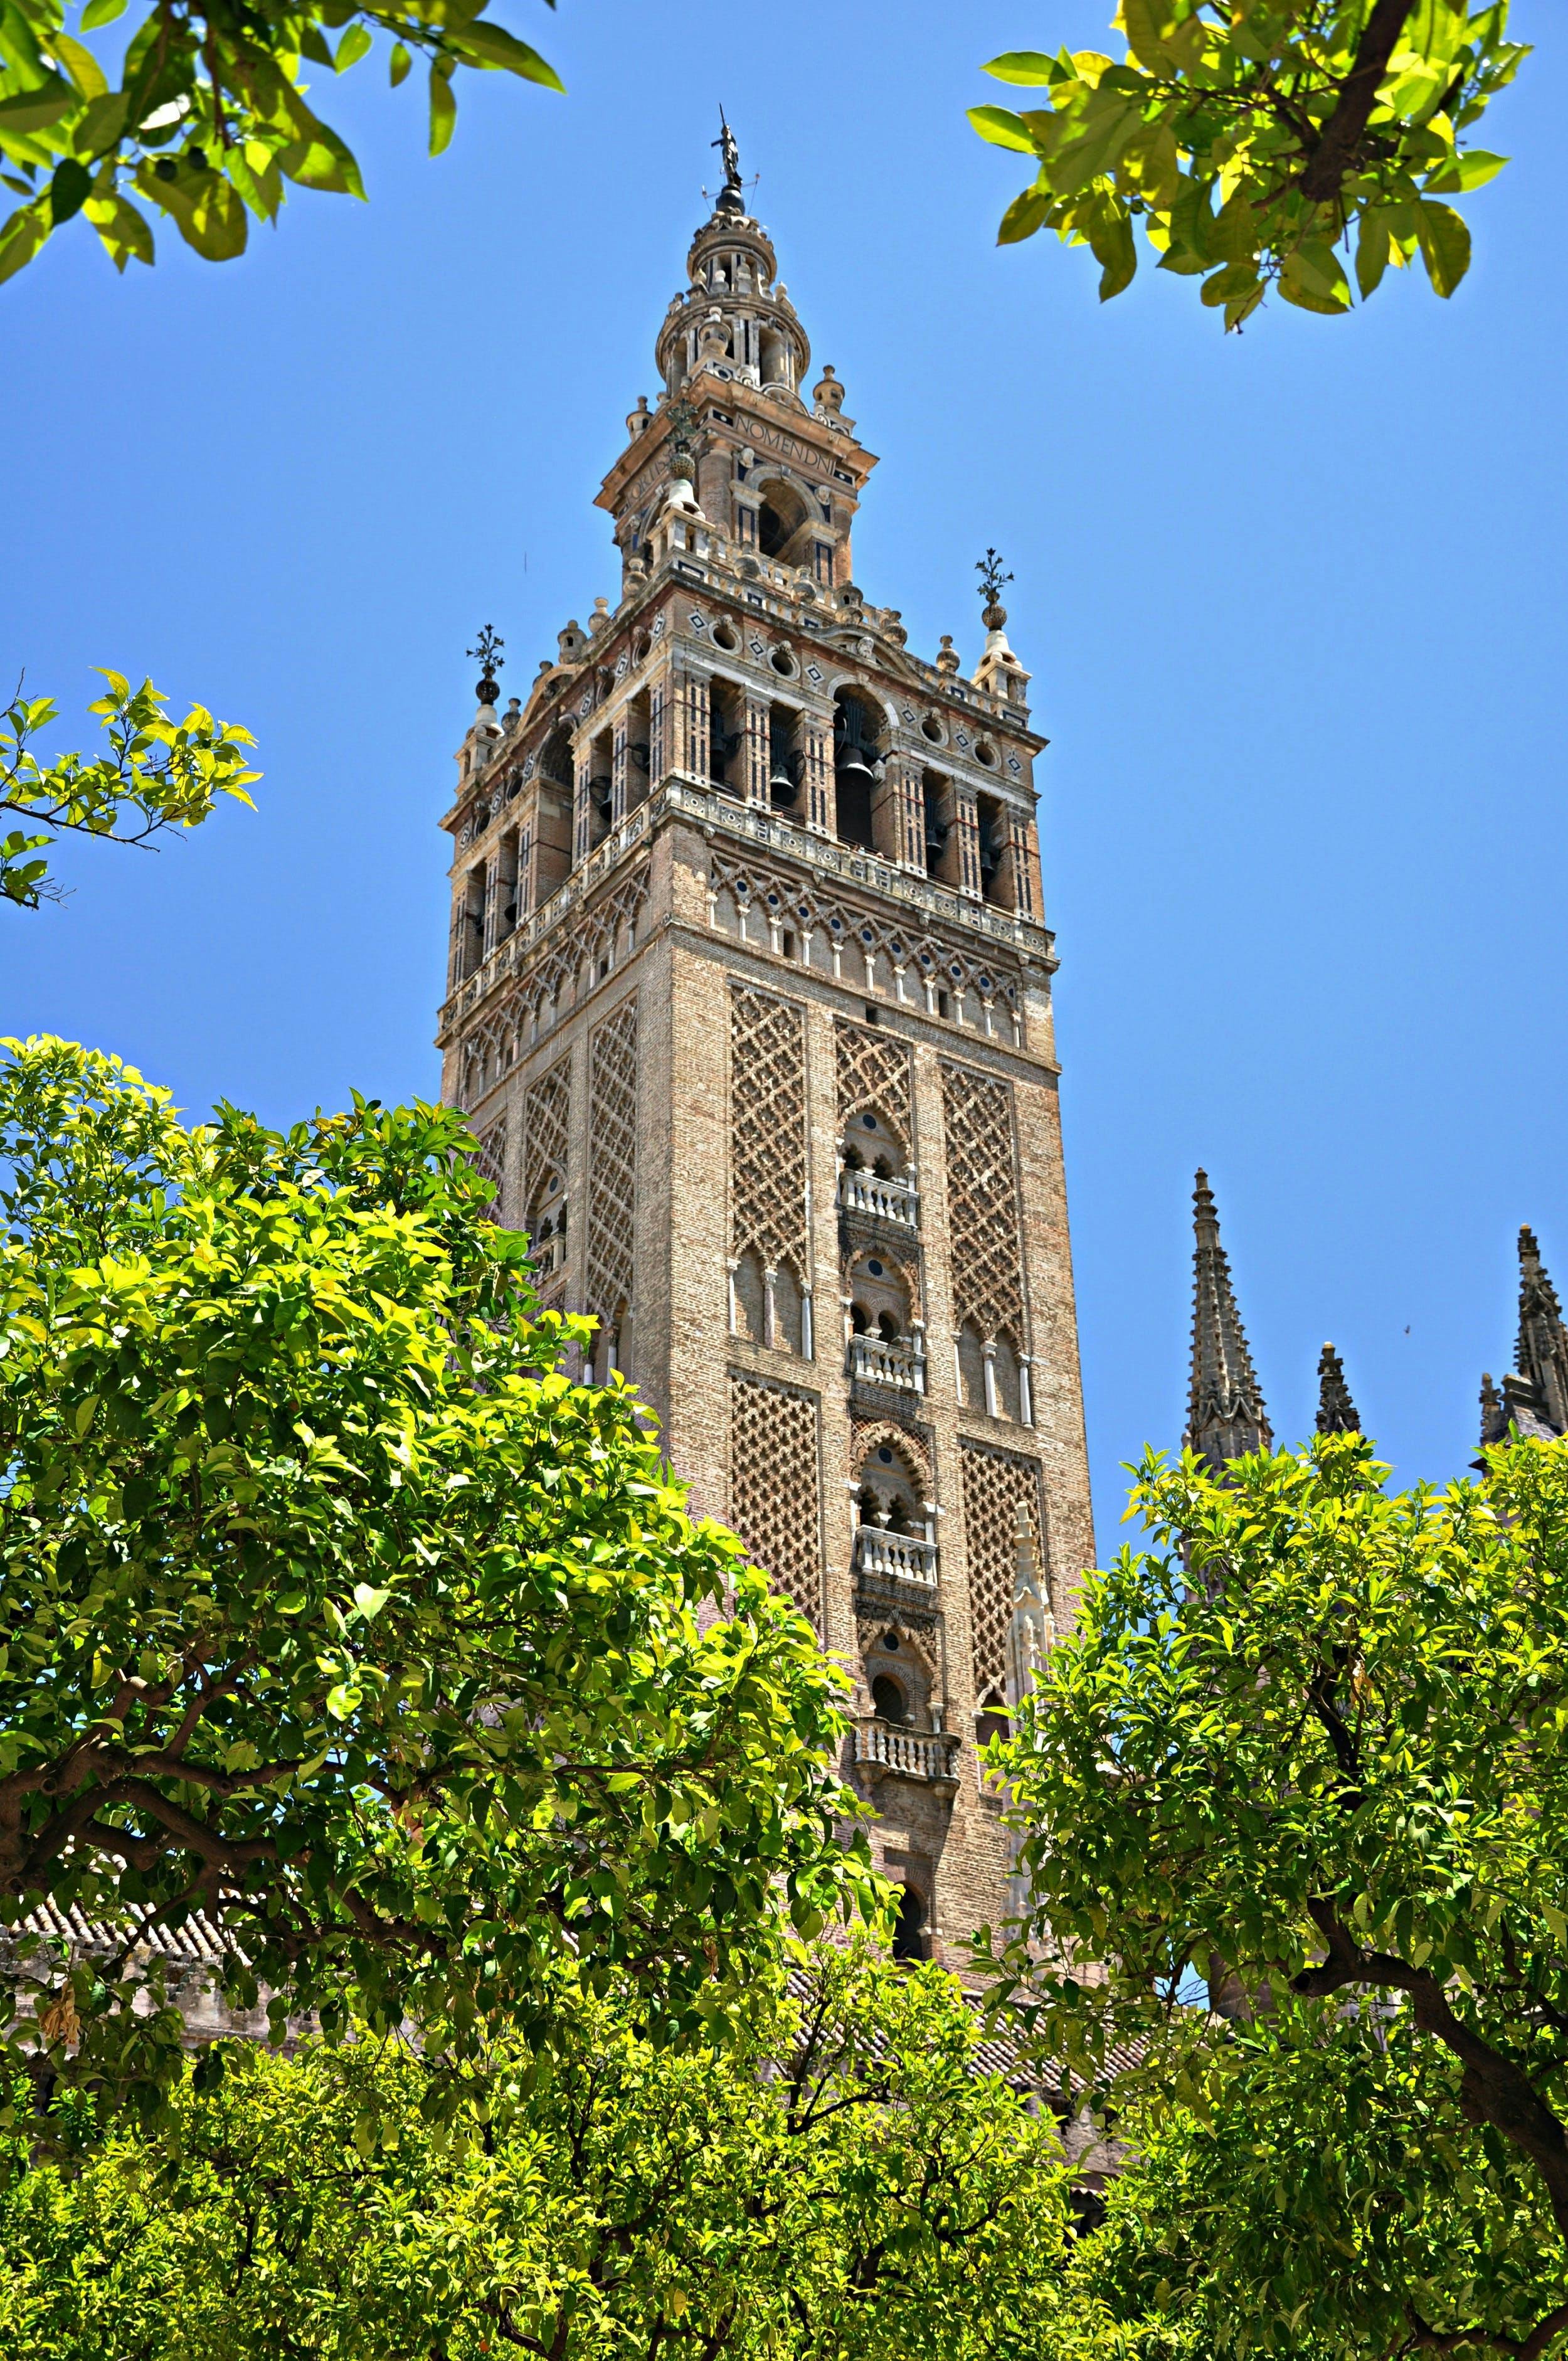 Tickets für die Kathedrale von Sevilla und den Glockenturm Giralda und Führung